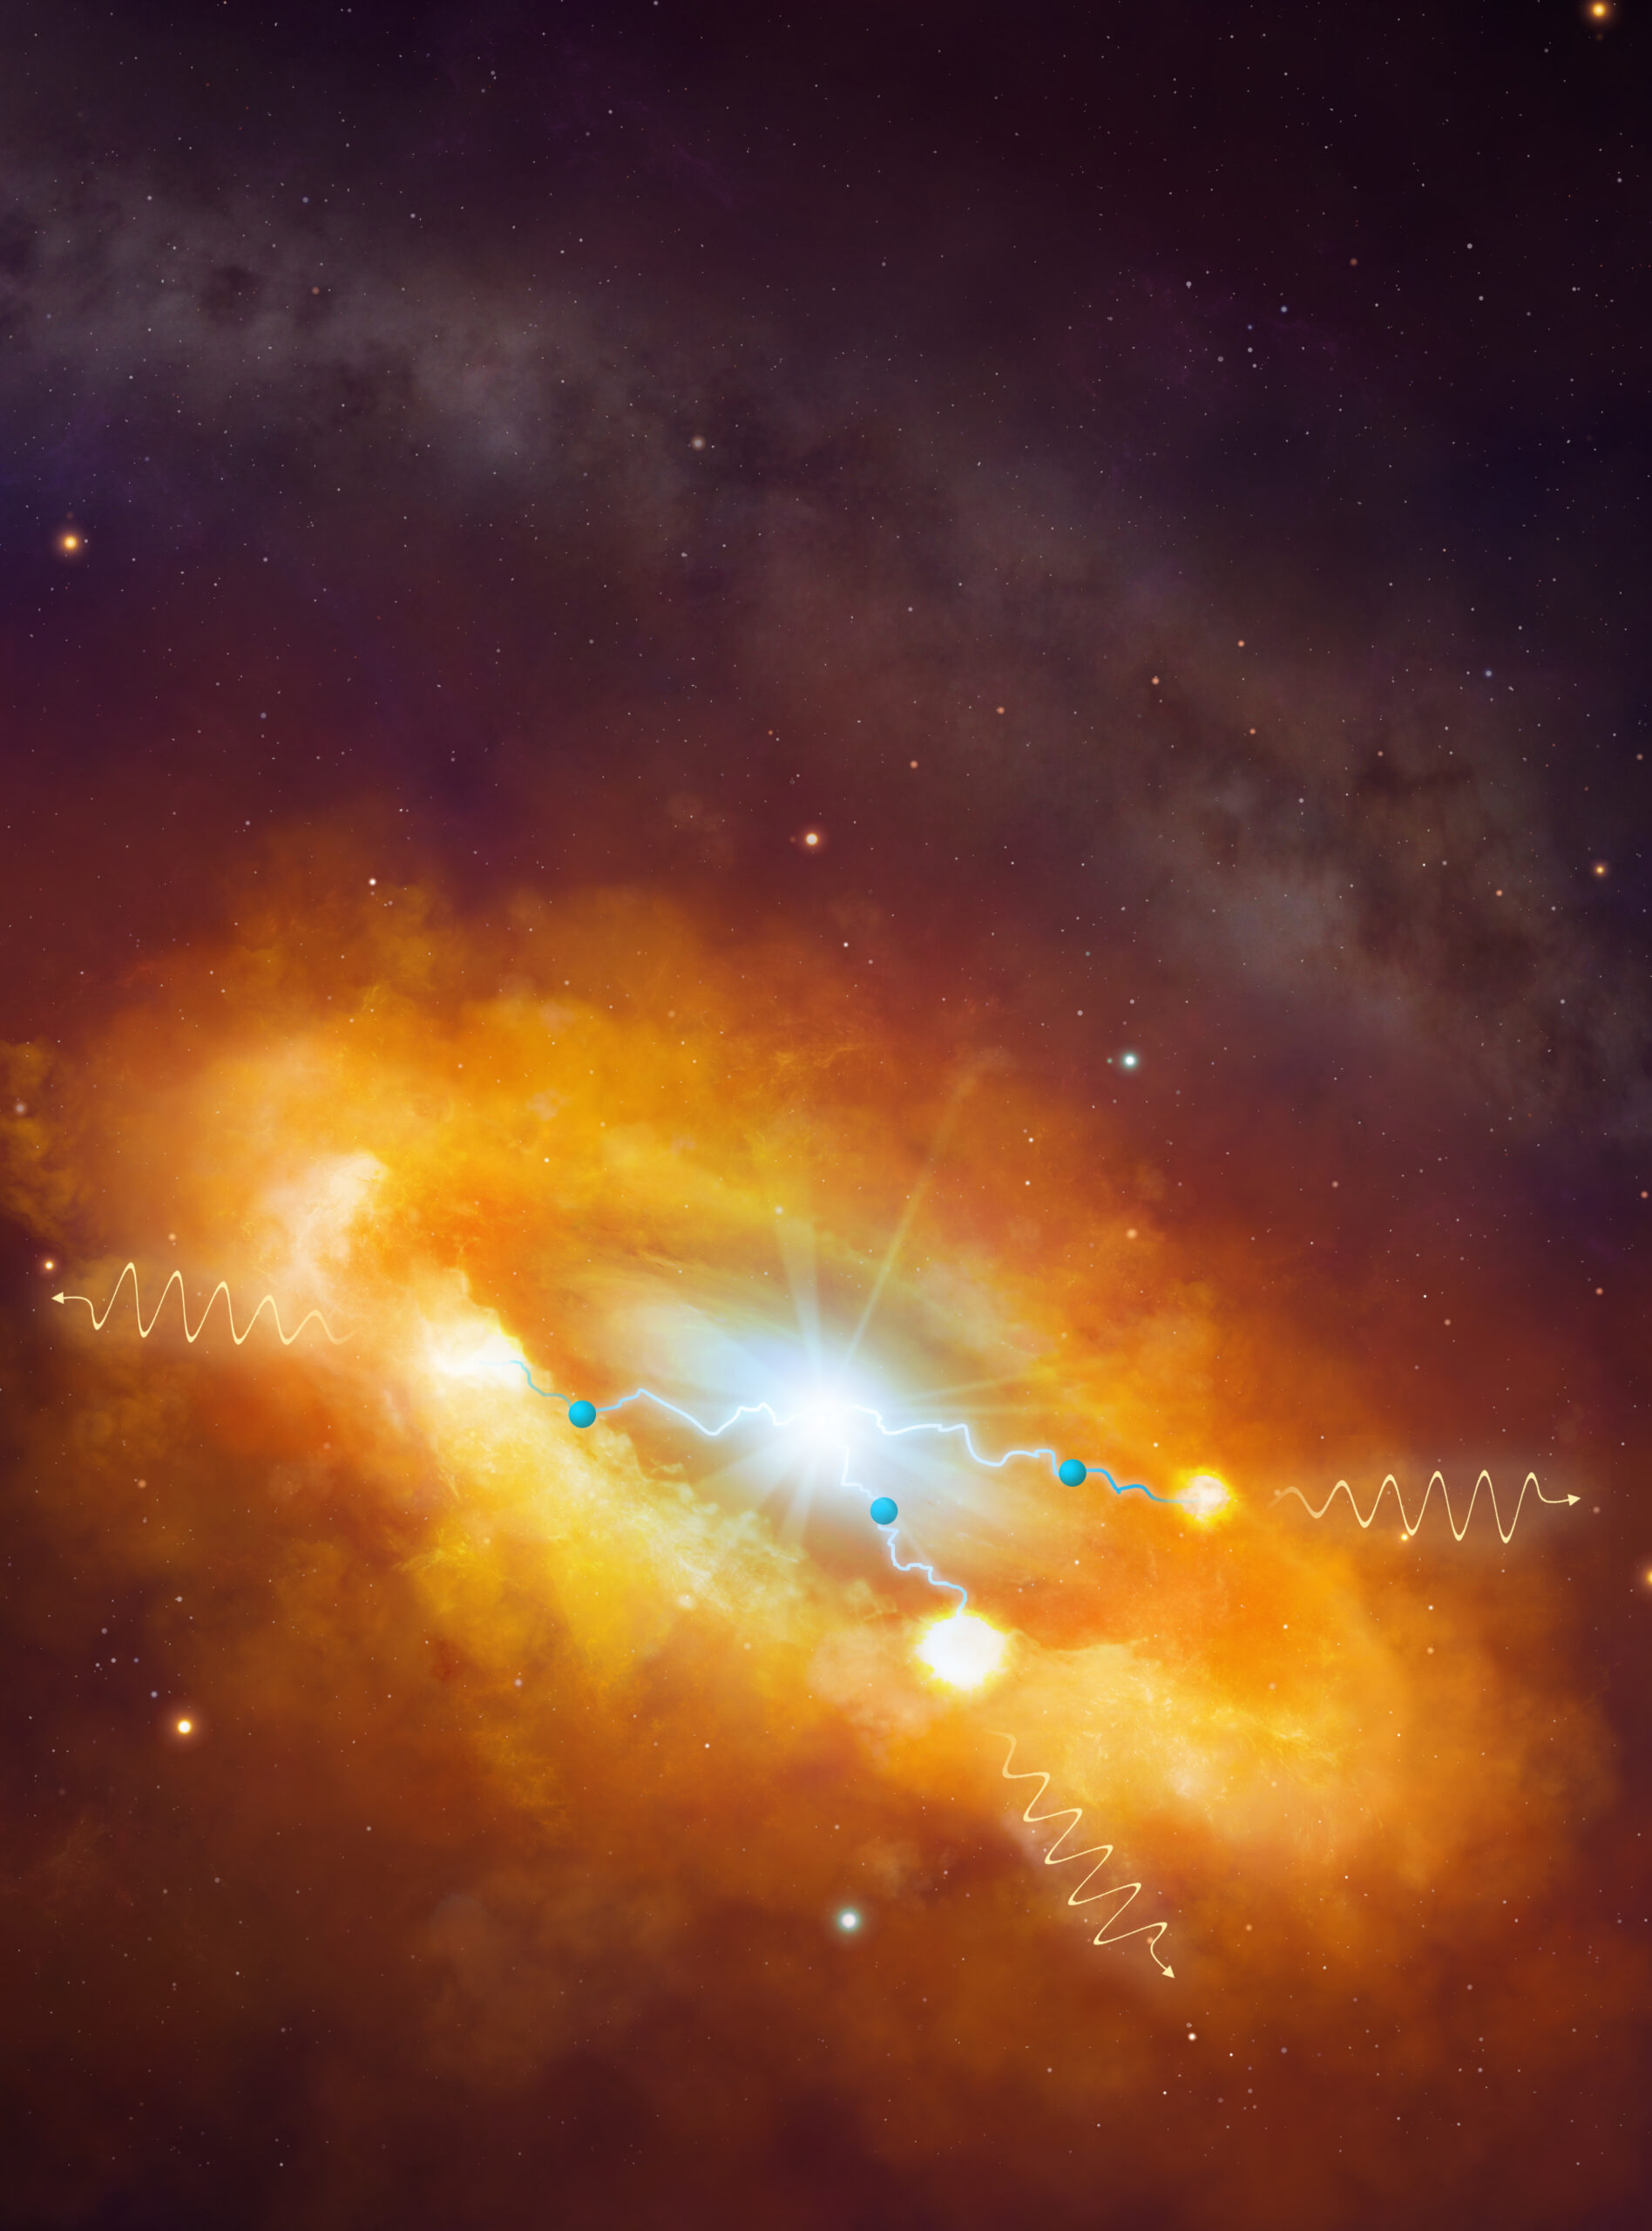 Towards entry "Das Zentrum der Milchstraße: Ein Beschleuniger galaktischer kosmischer Strahlung mit beispielloser Energie"